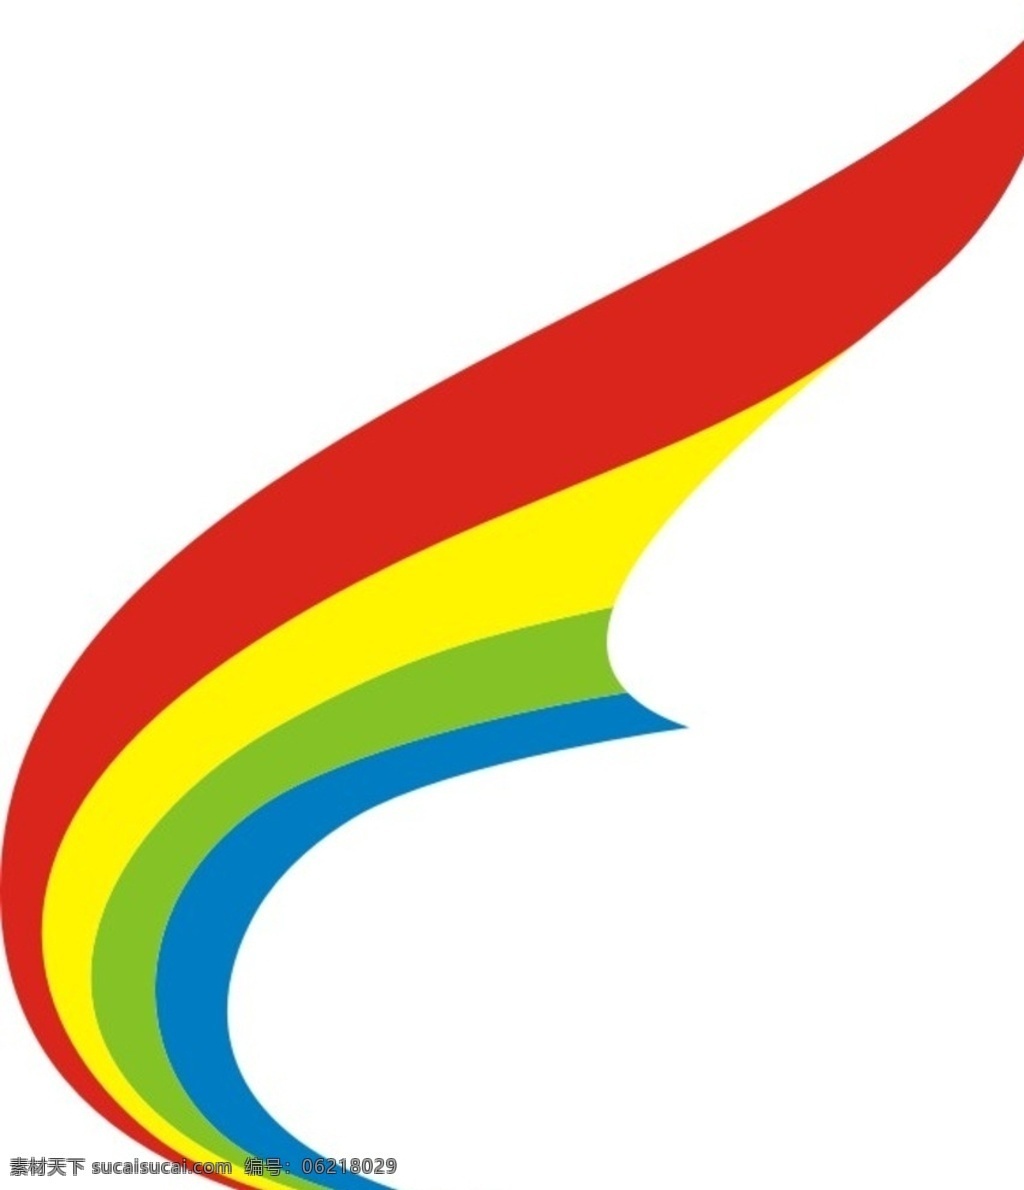 西藏 航空 logo tibet airlines 西藏航空 标志图标 企业 标志